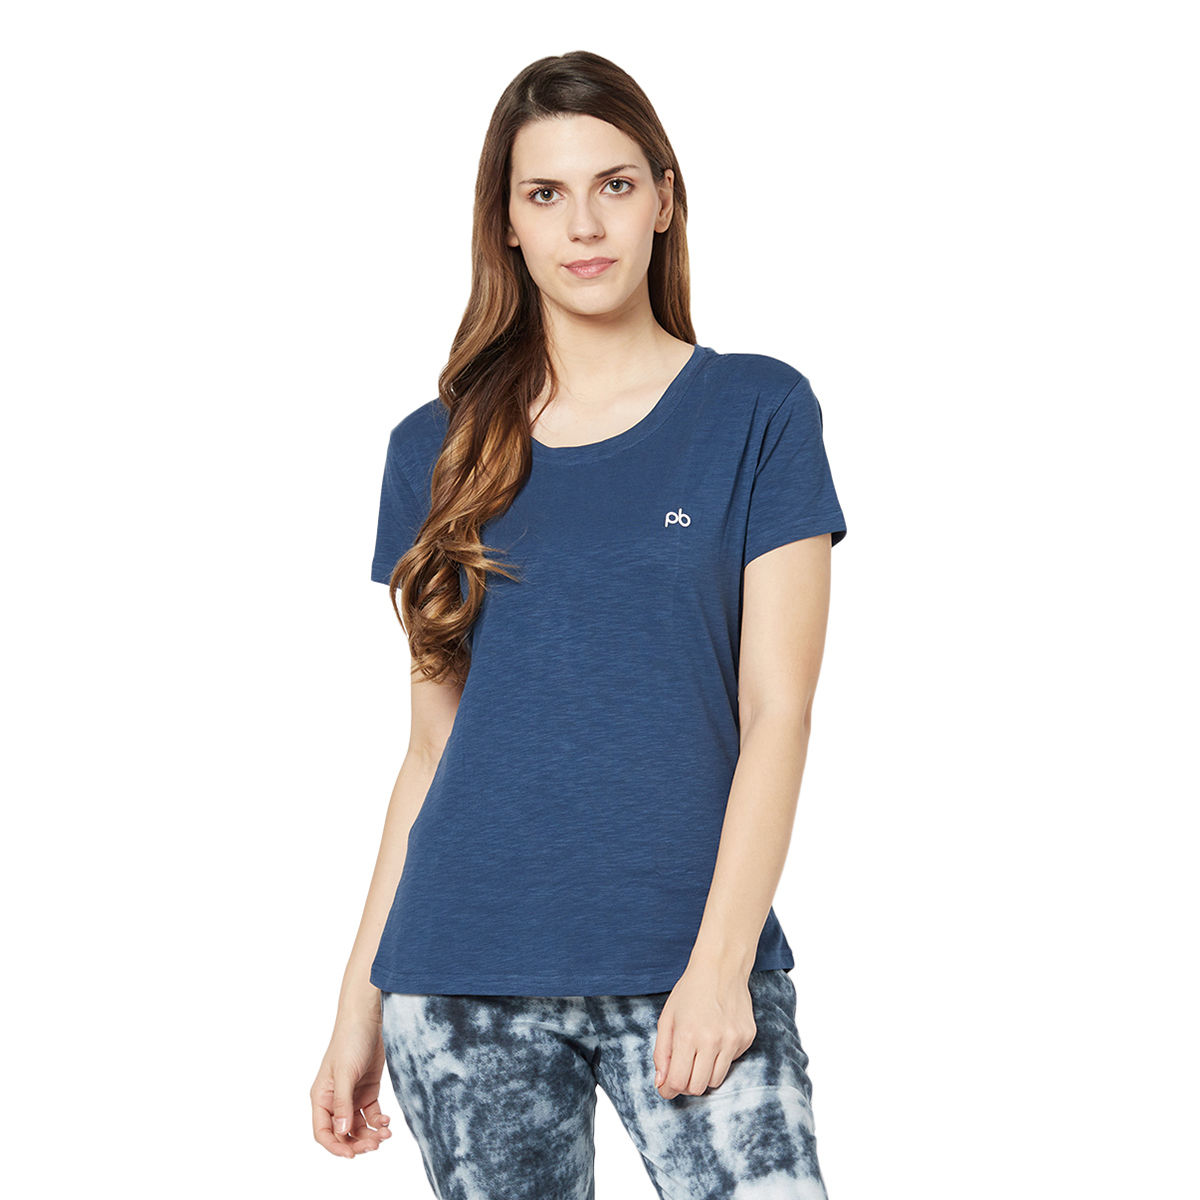 Buy Groversons Paris Beauty Women's Cotton Rich T-shirt - Blue Online